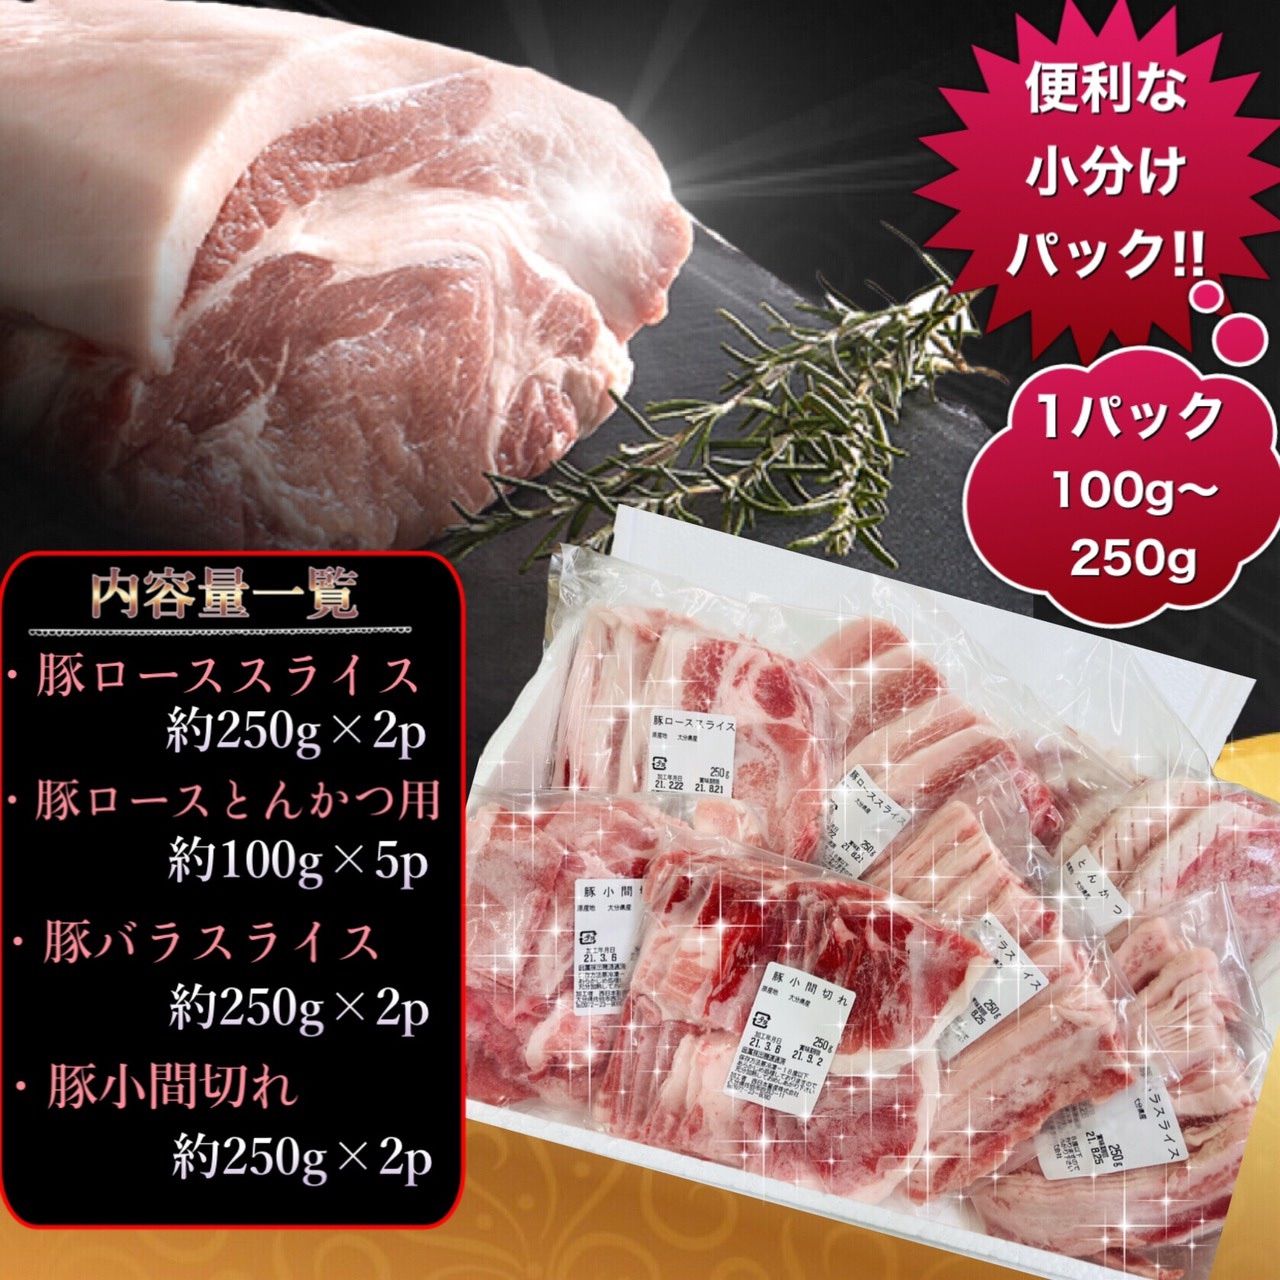 【★5評価】国産 豚肉のバラエティーパック❣️訳あり❣️総重量2kg🐷-2